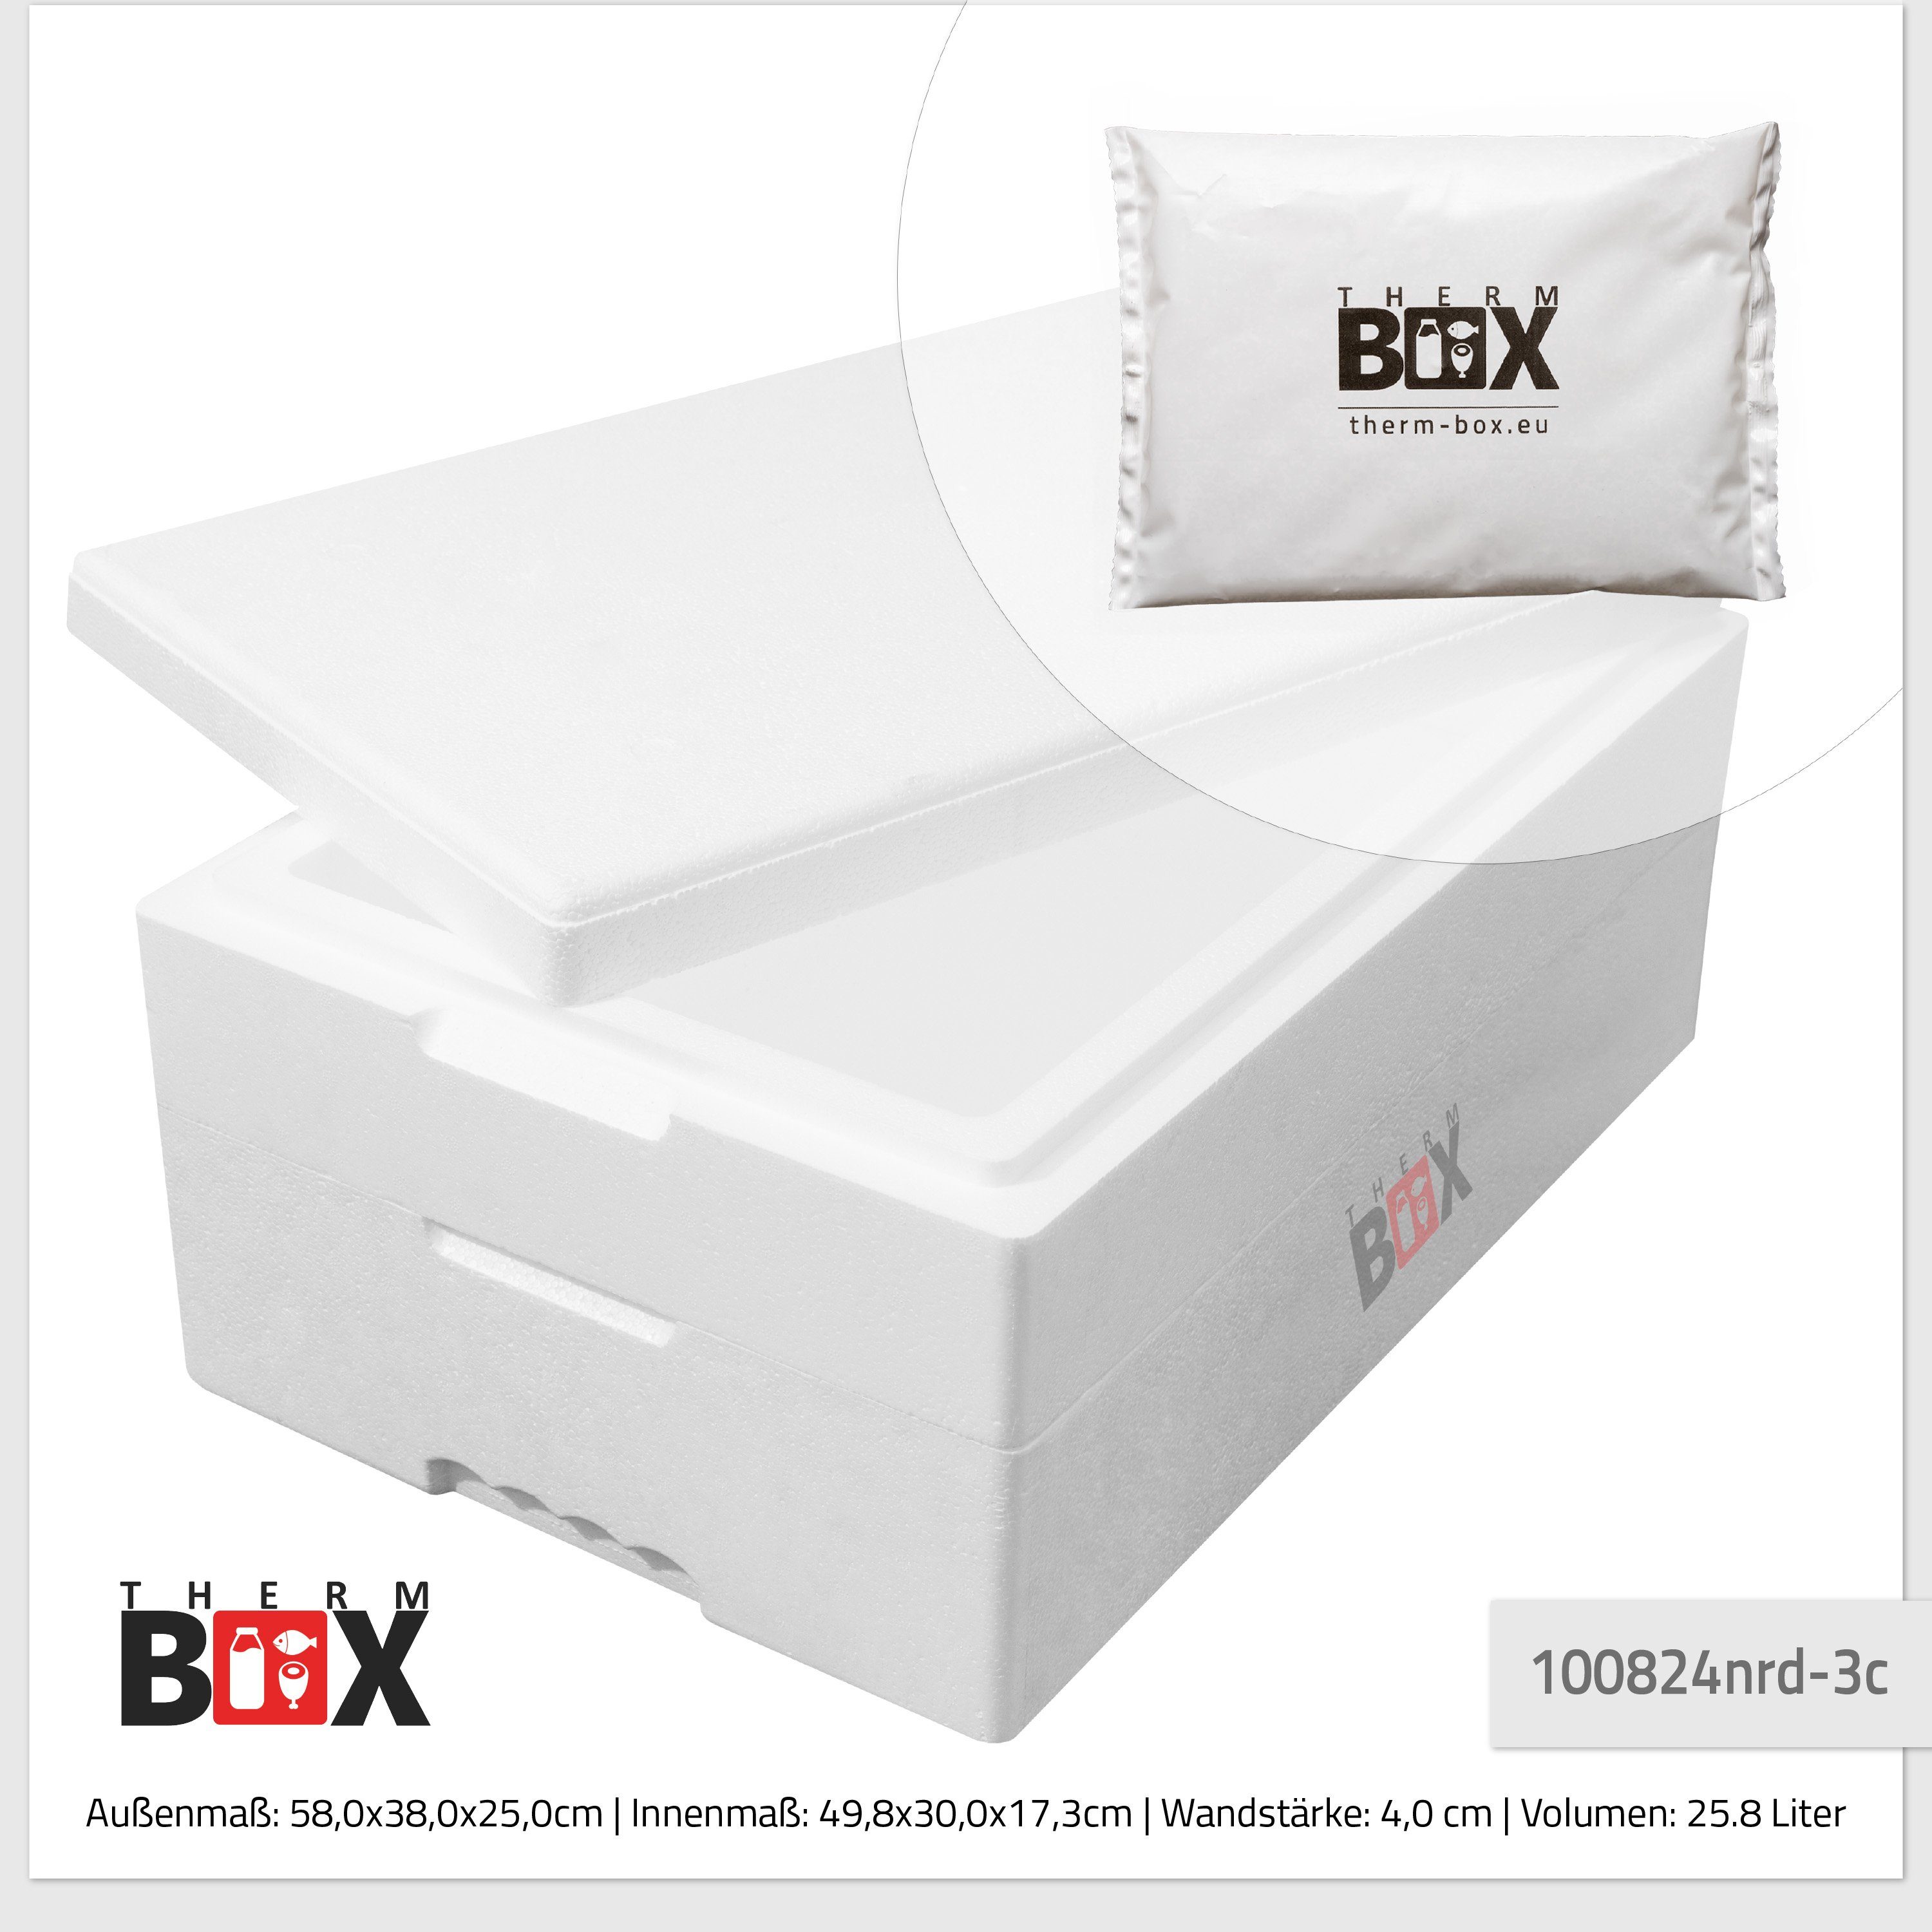 Kühlbox Innen: 25M mit (0-tlg., Styropor-Verdichtet, mit 25,8L Thermbox THERM-BOX Kühlkissen), Thermobehälter Transportbox Thermobehälter für 49x30x17cm 3 Modularbox Kühlkissen,